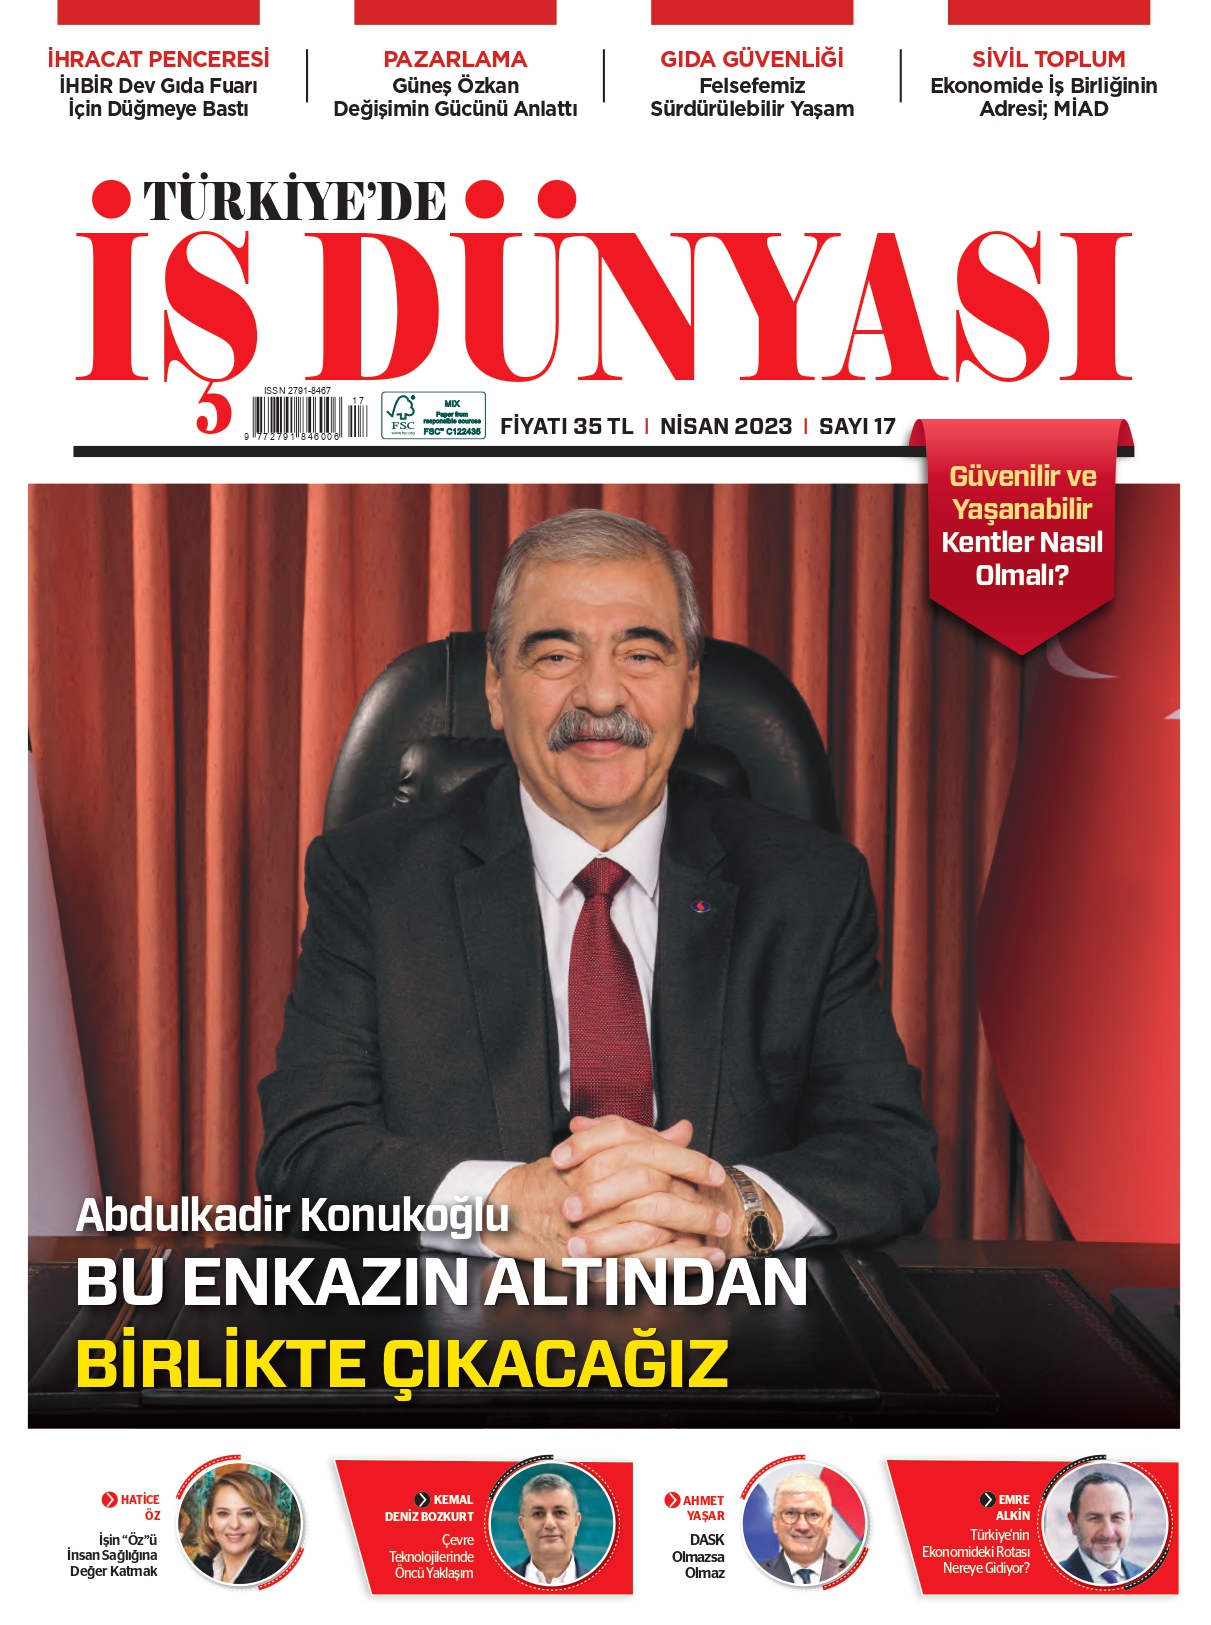 TÜRKİYE'DE İŞ DÜNYASI DERGİSİ_page-0001